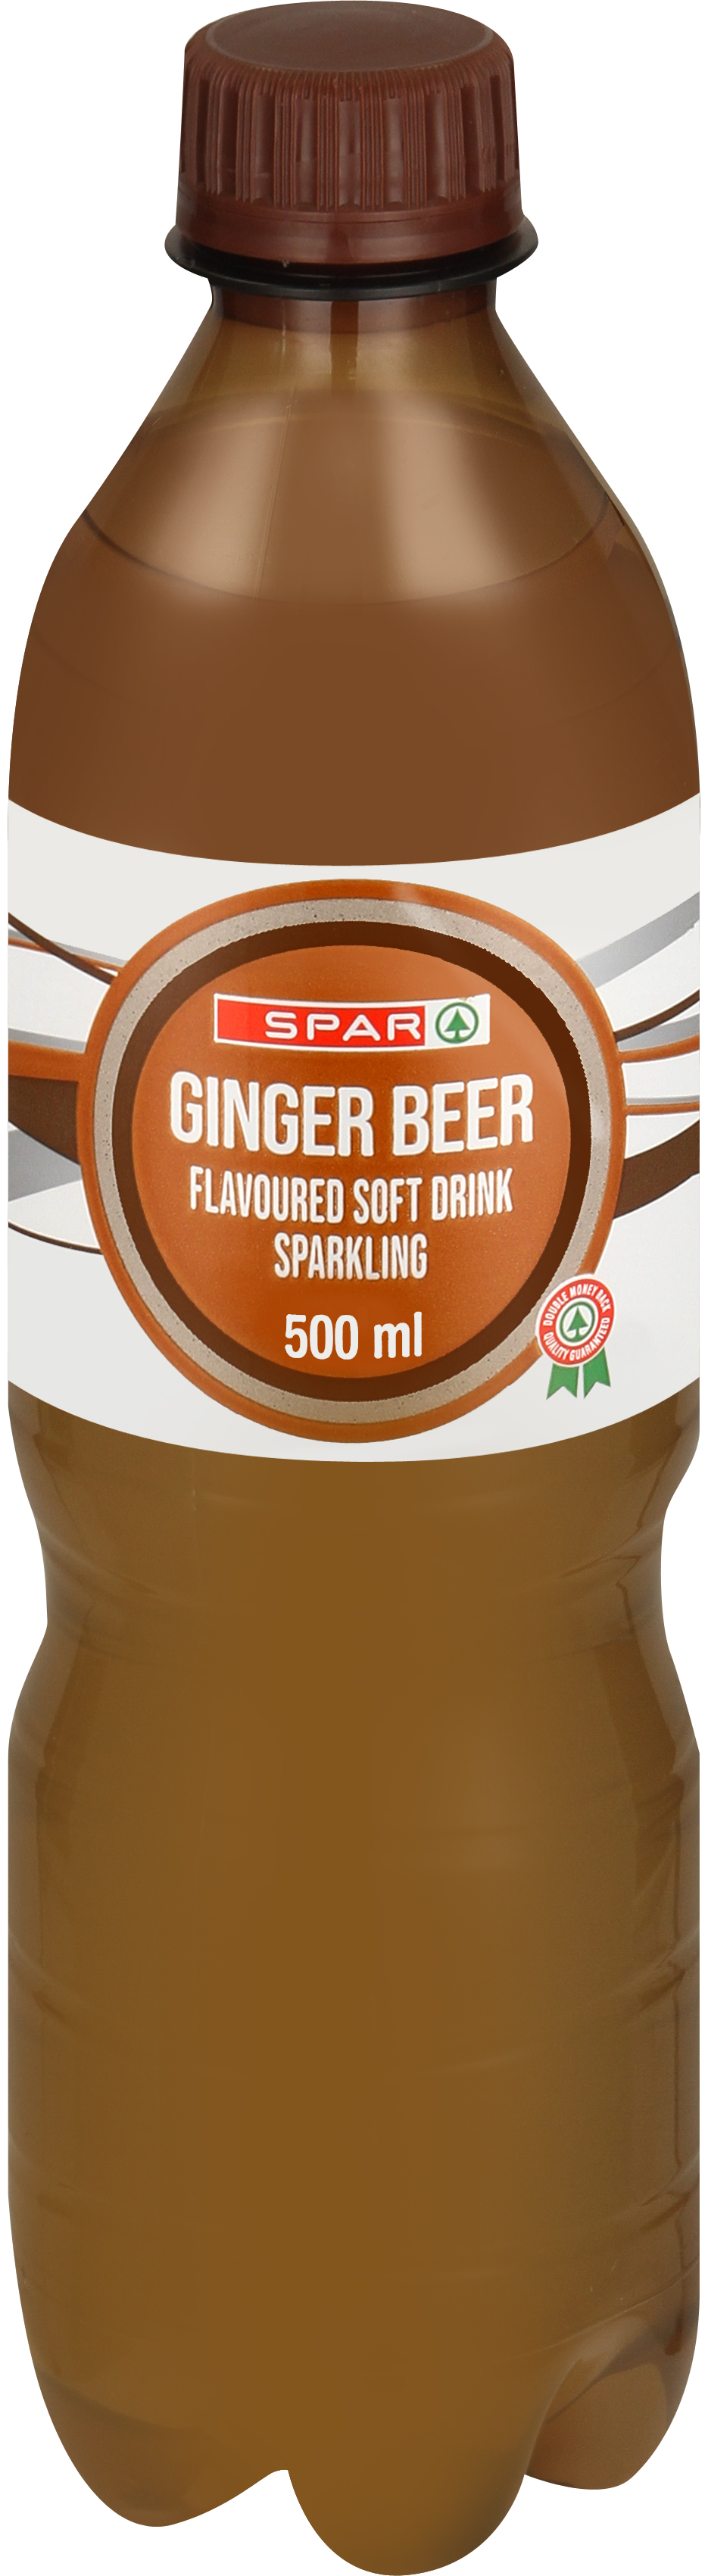 carbonated soft drink ginger beer flavoured